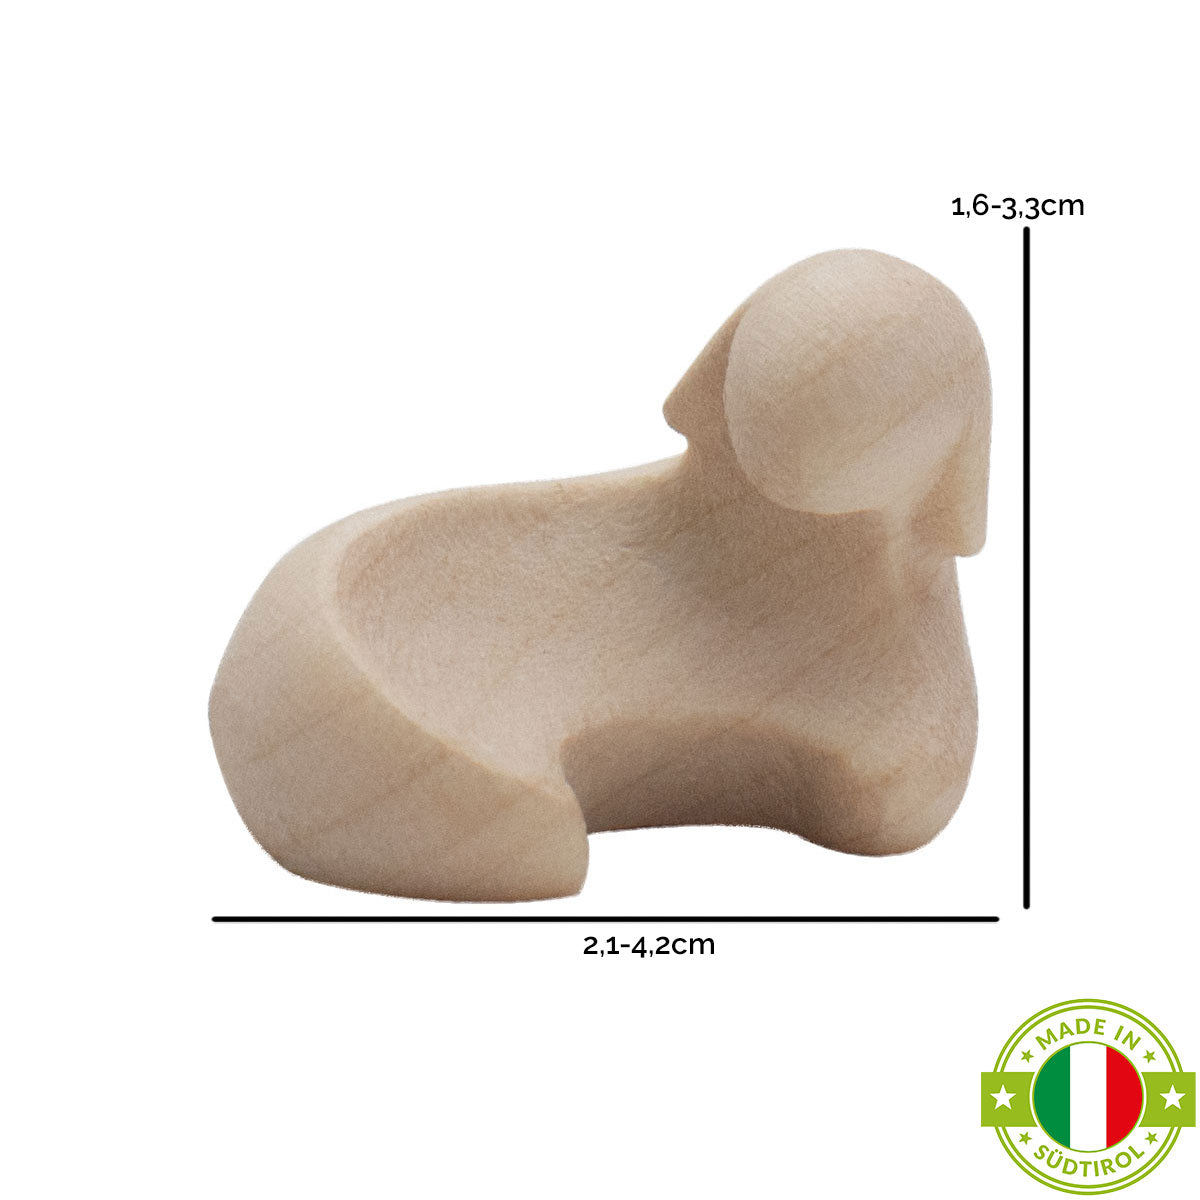 Krippenfigur ‘Lamm’ | Ahorn natur | in verschiedenen Größen | Made in Südtirol